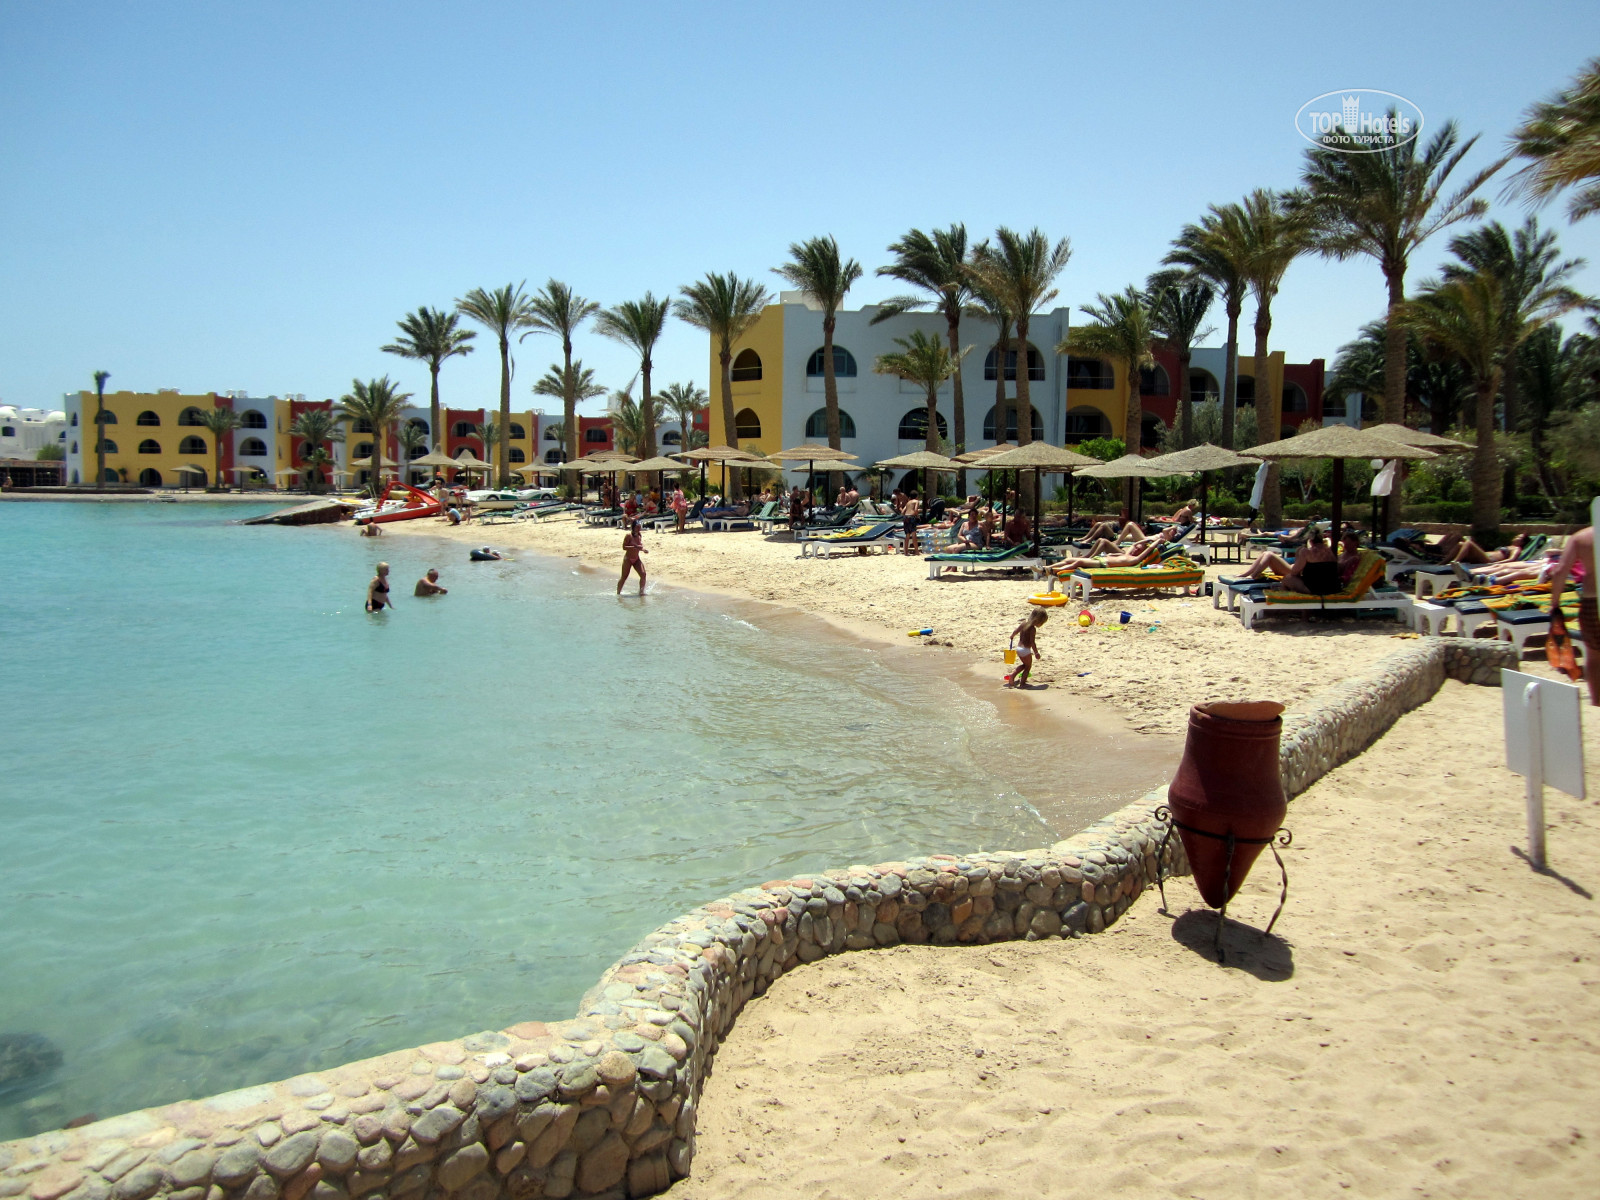 Arabia azur resort 4. Arabia Azur Beach Resort 4*. Египет Арабия Азур. Azur Хургада. Arabia Azur 4* фото.